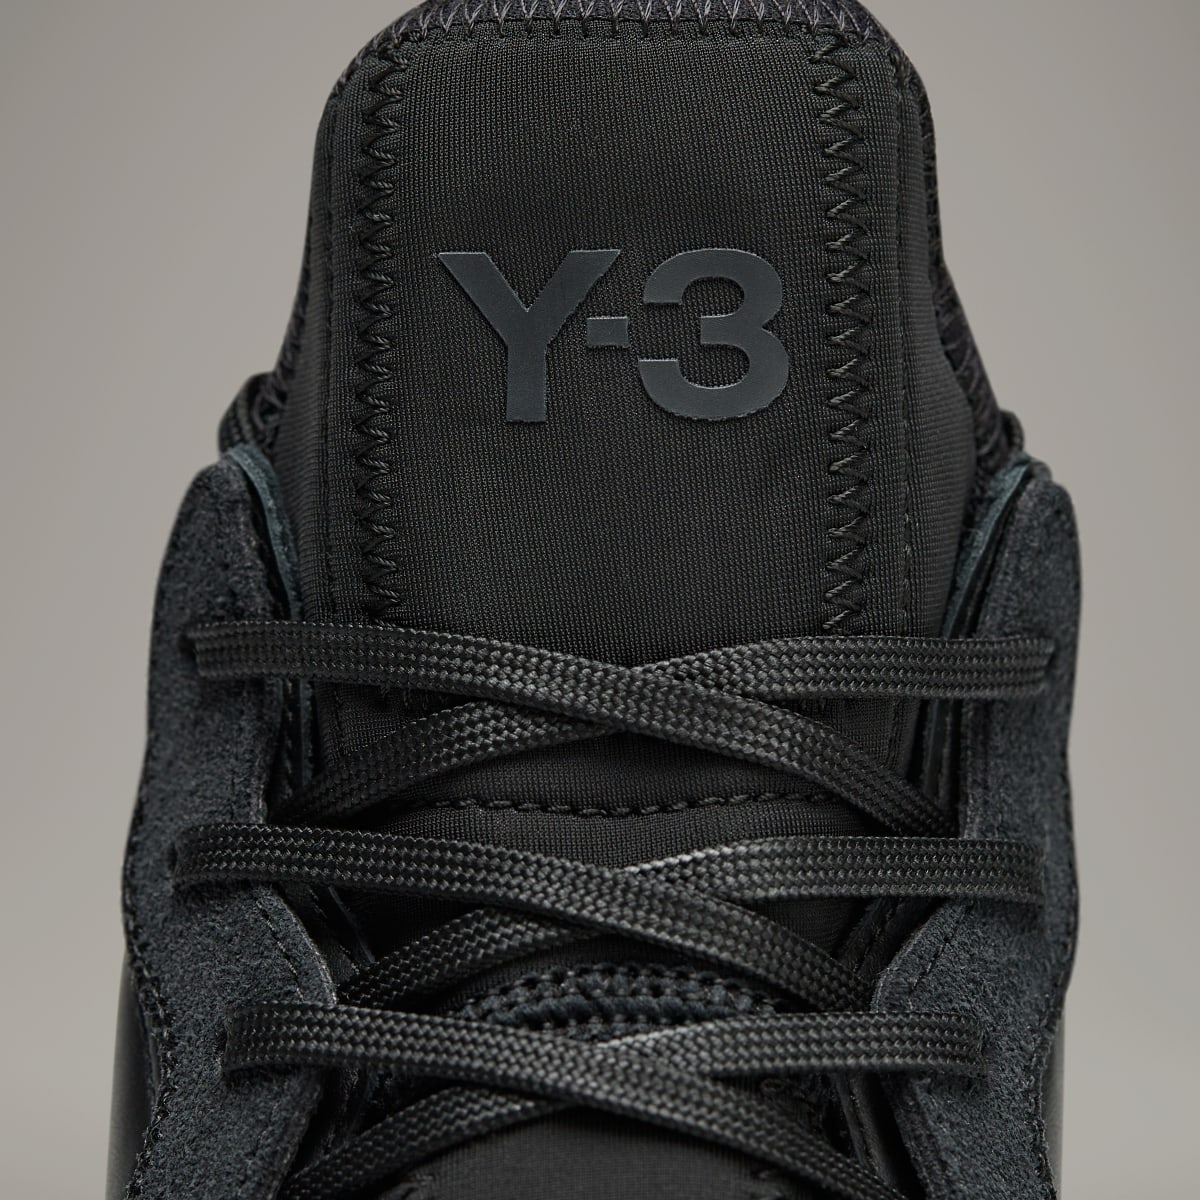 Adidas Buty Y-3 Kaiwa. 10